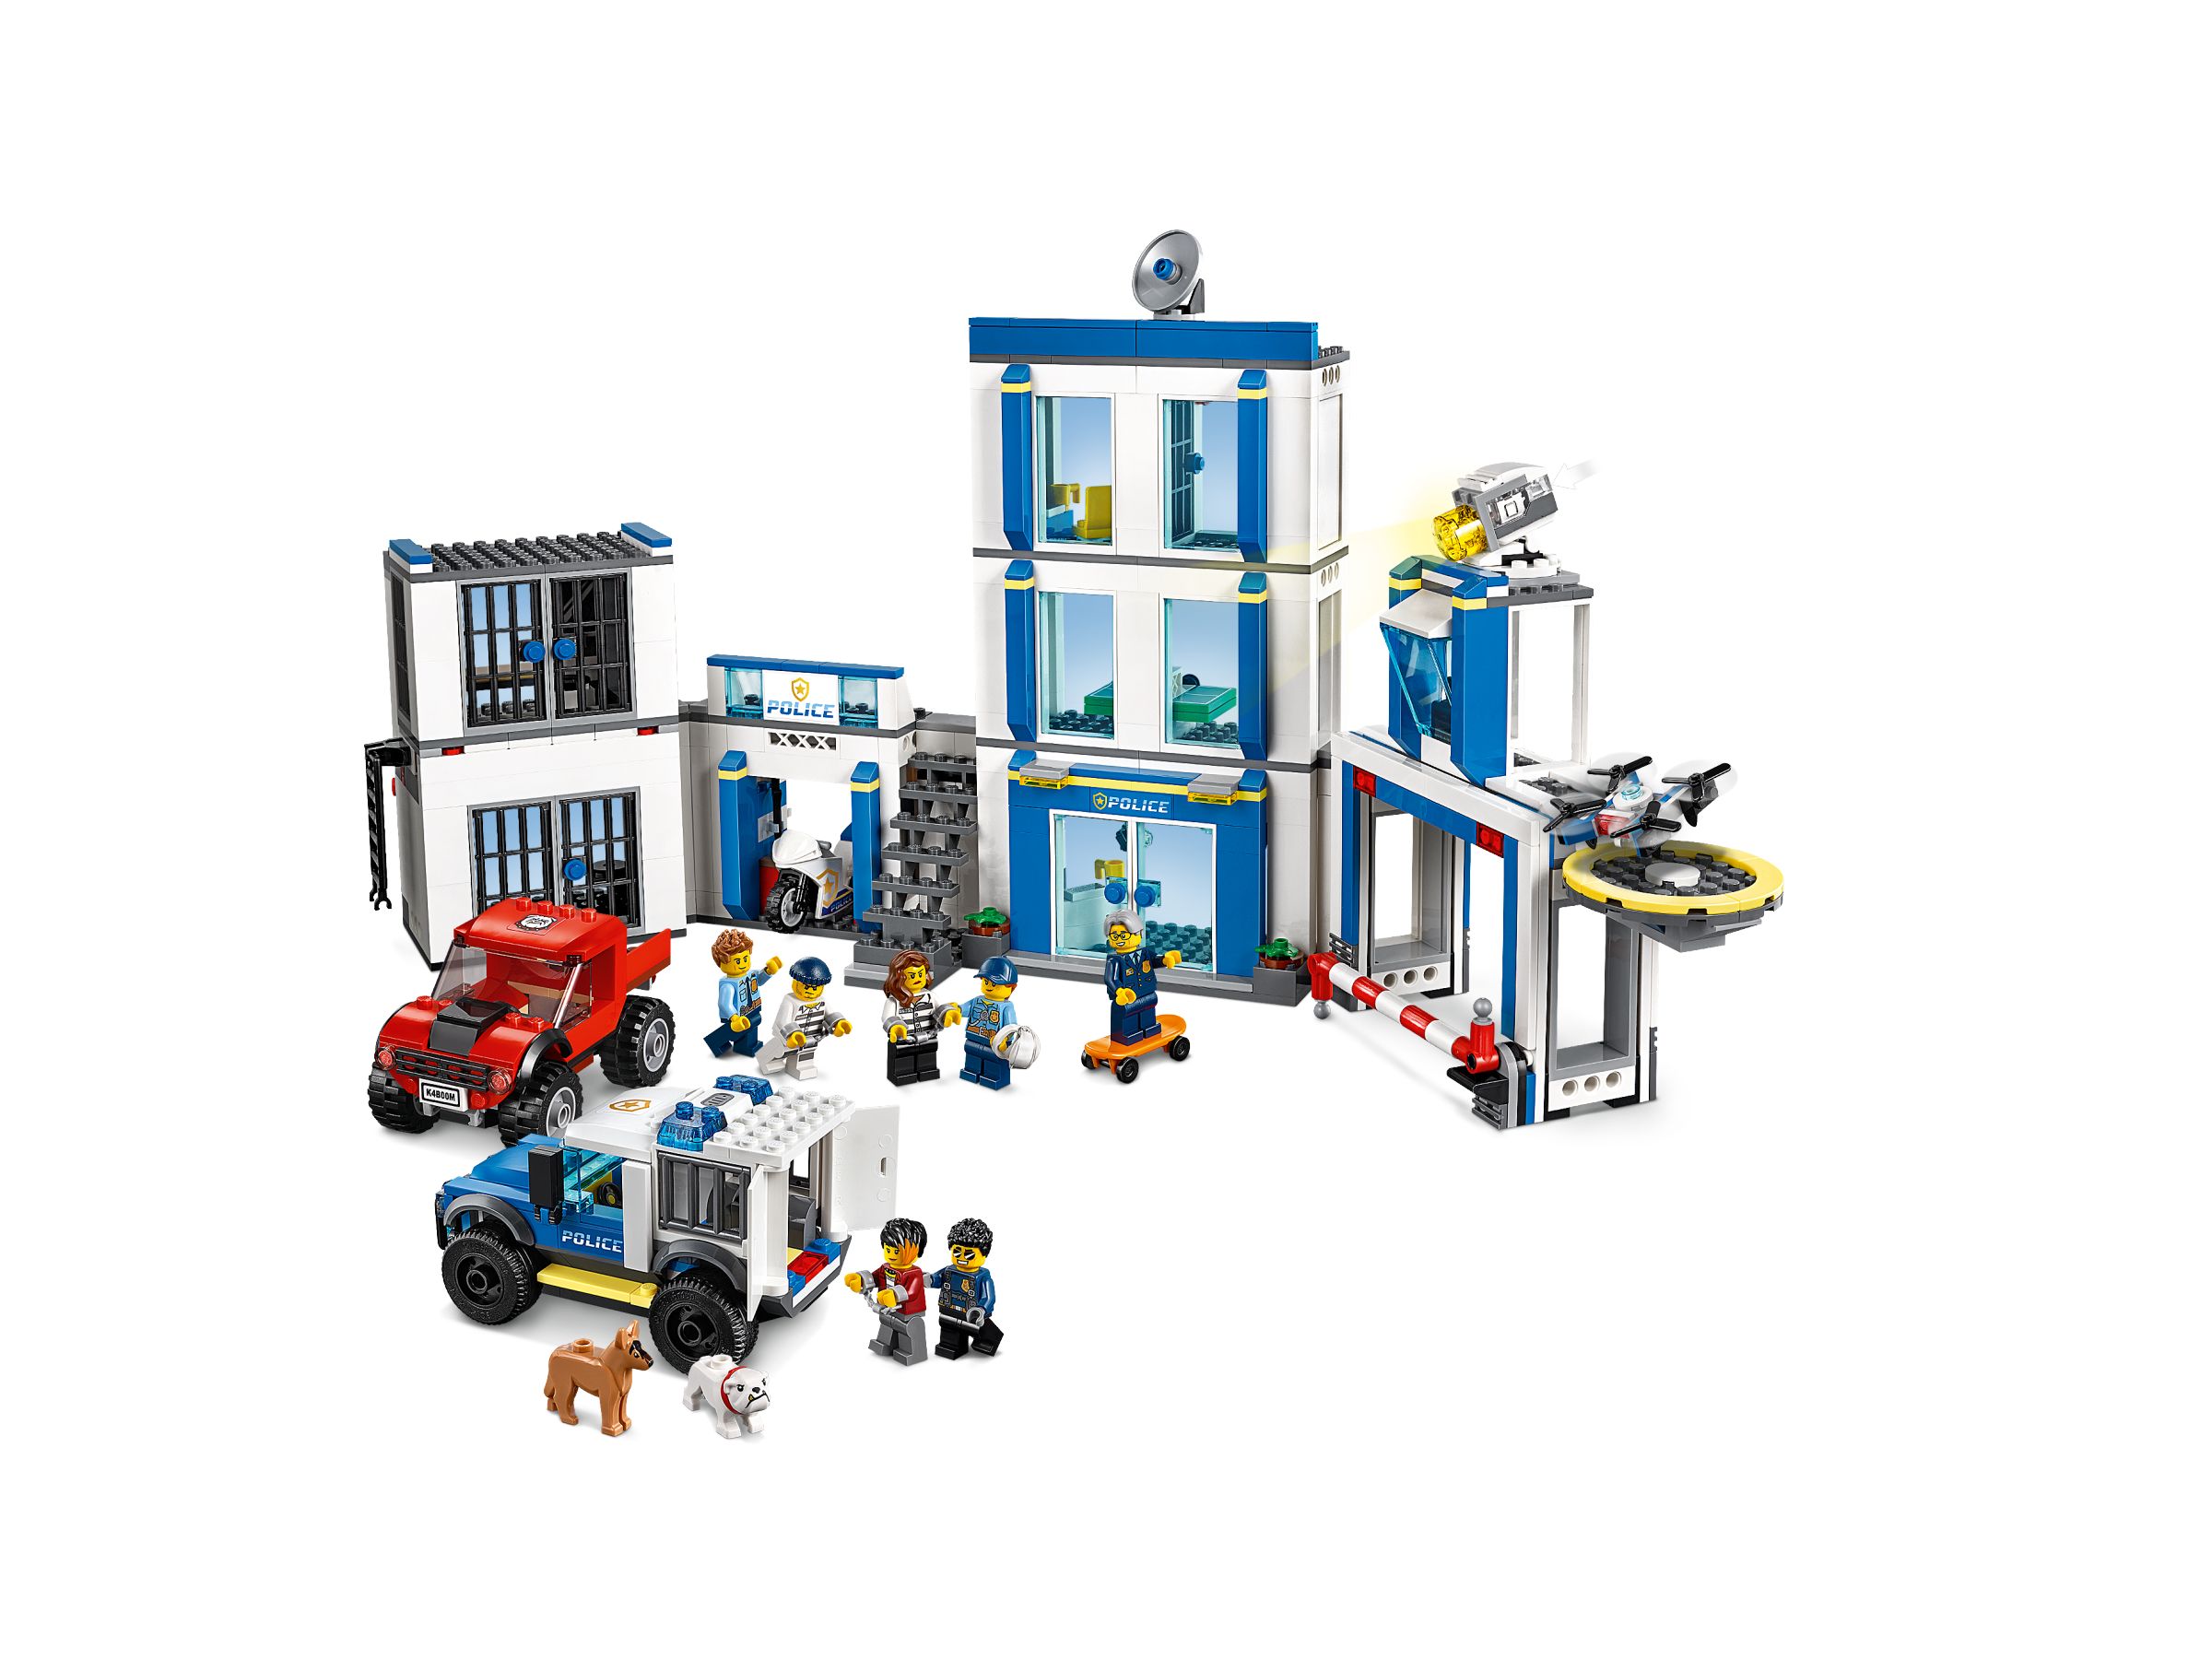 LEGO City 60246 Polizeistation LEGO_60246_alt3.jpg